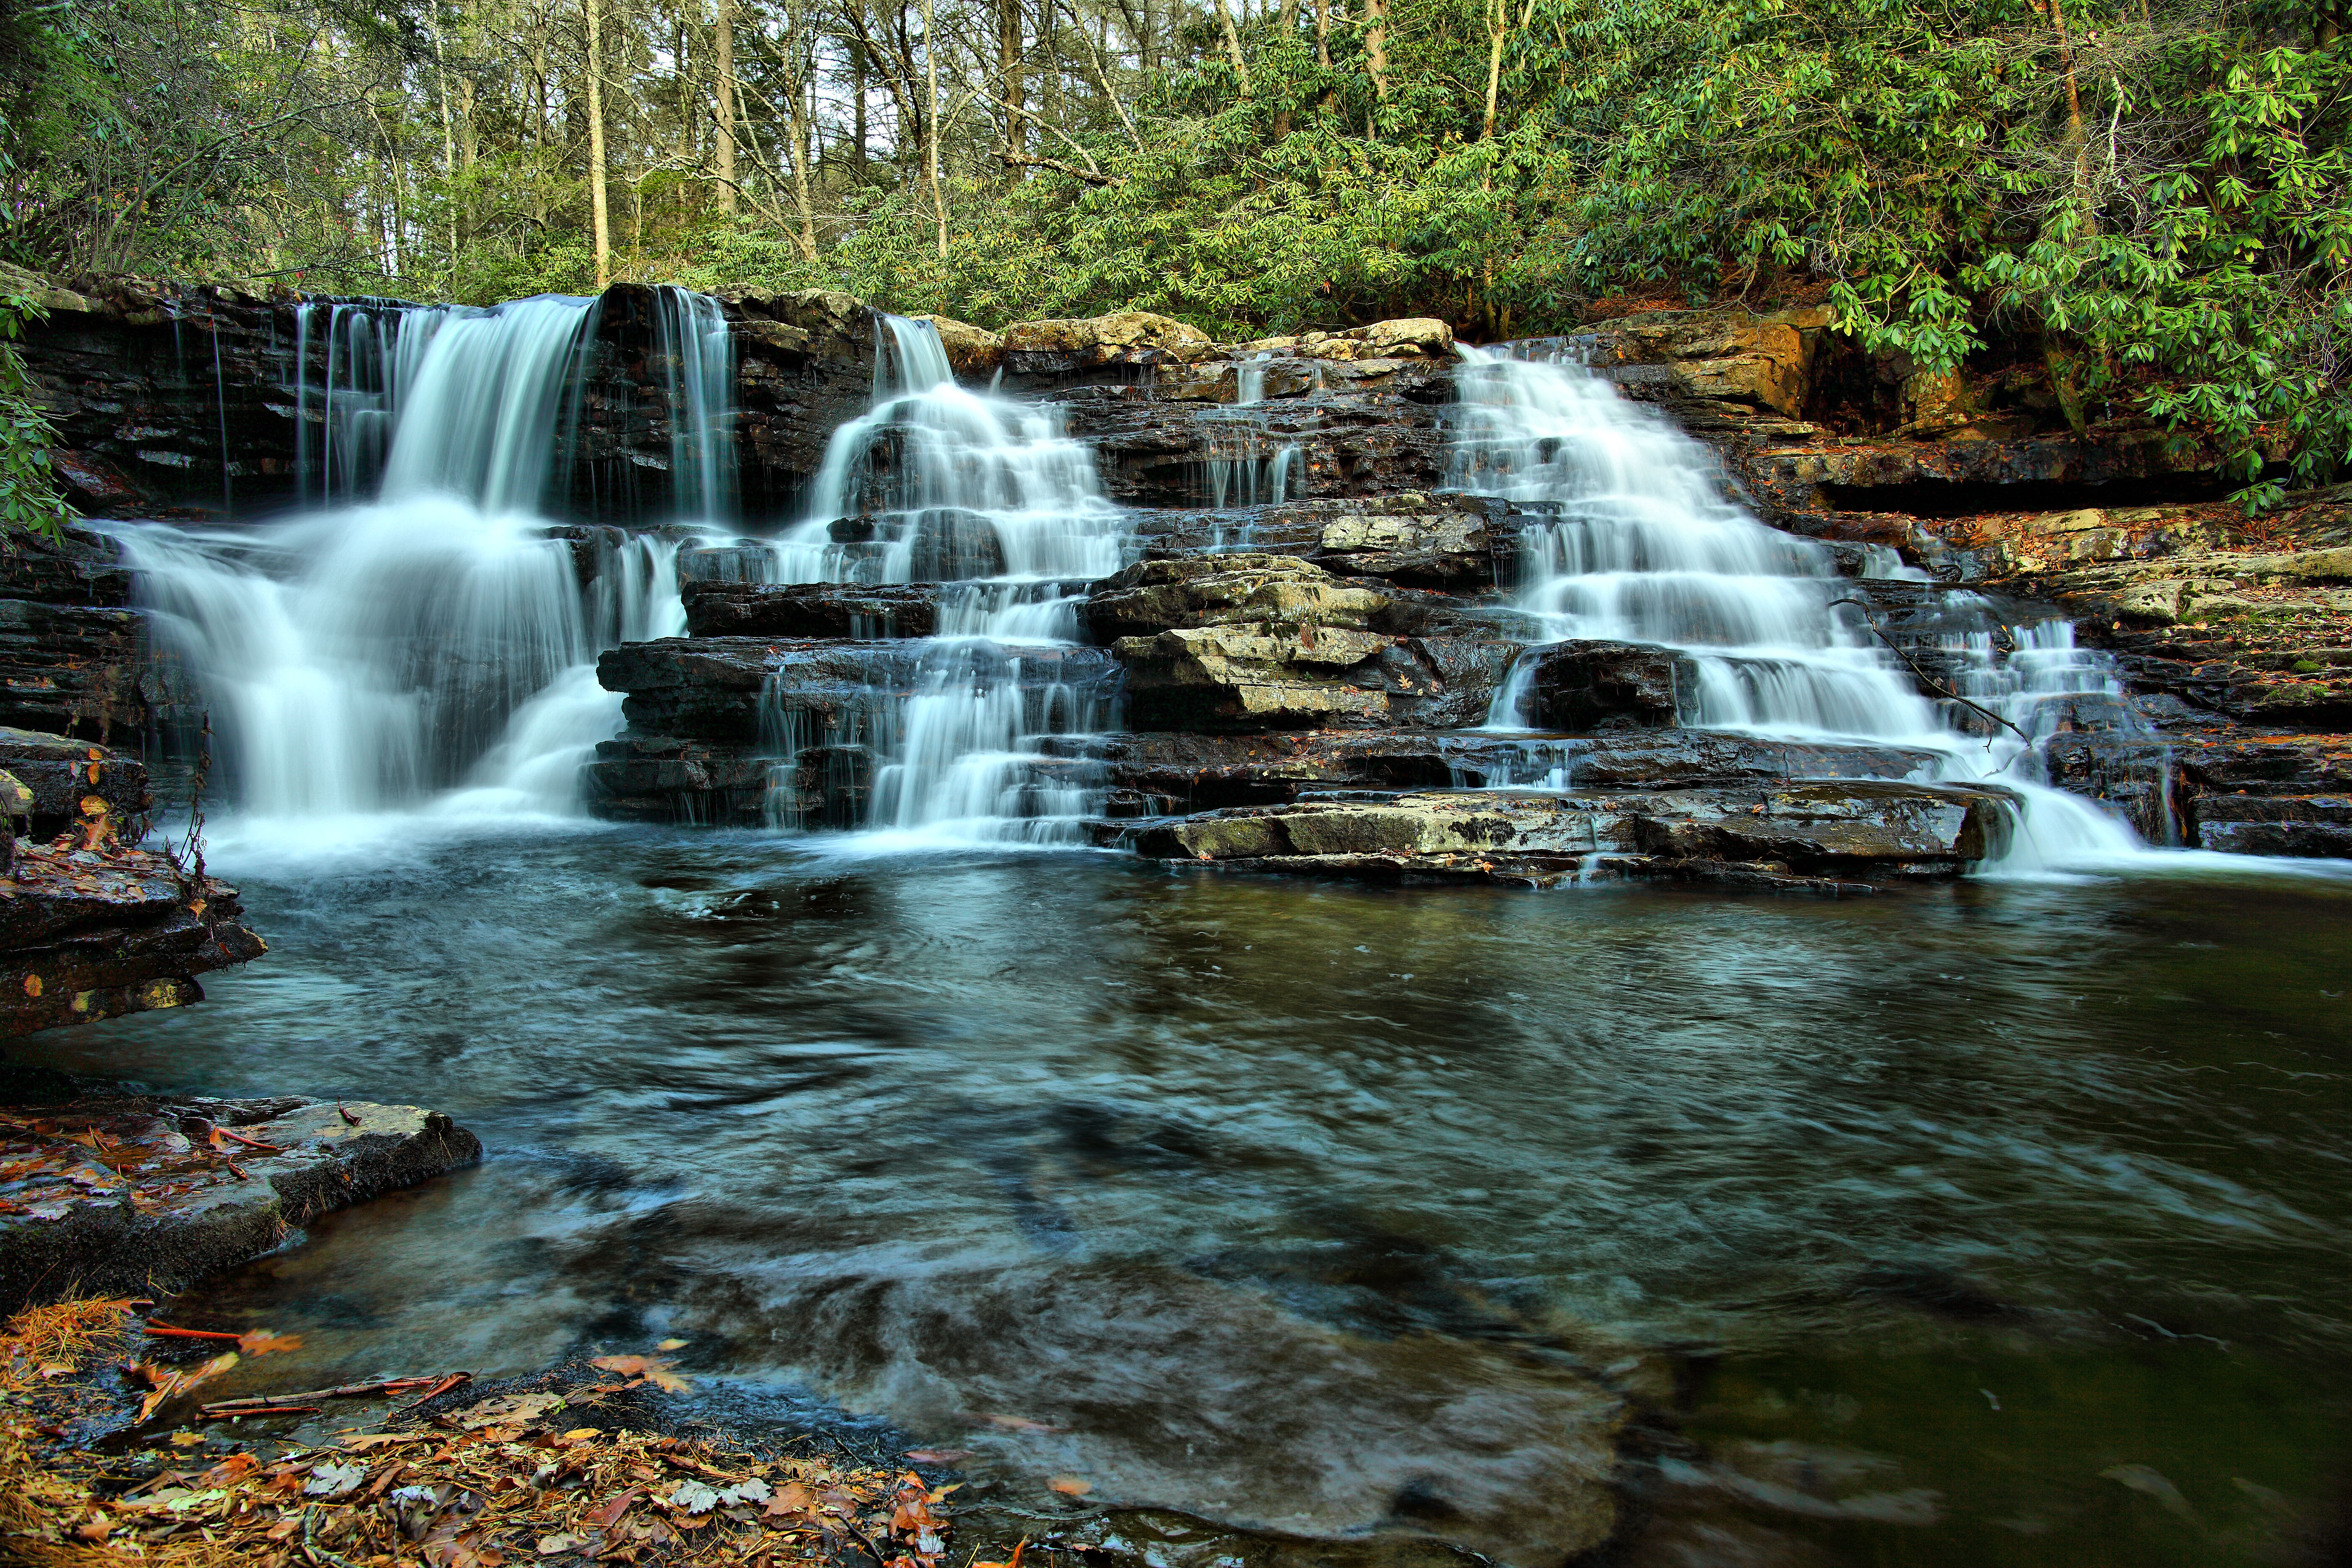 File:Upper-cascades - Virginia - ForestWander.jpg - Wikimedia Commons